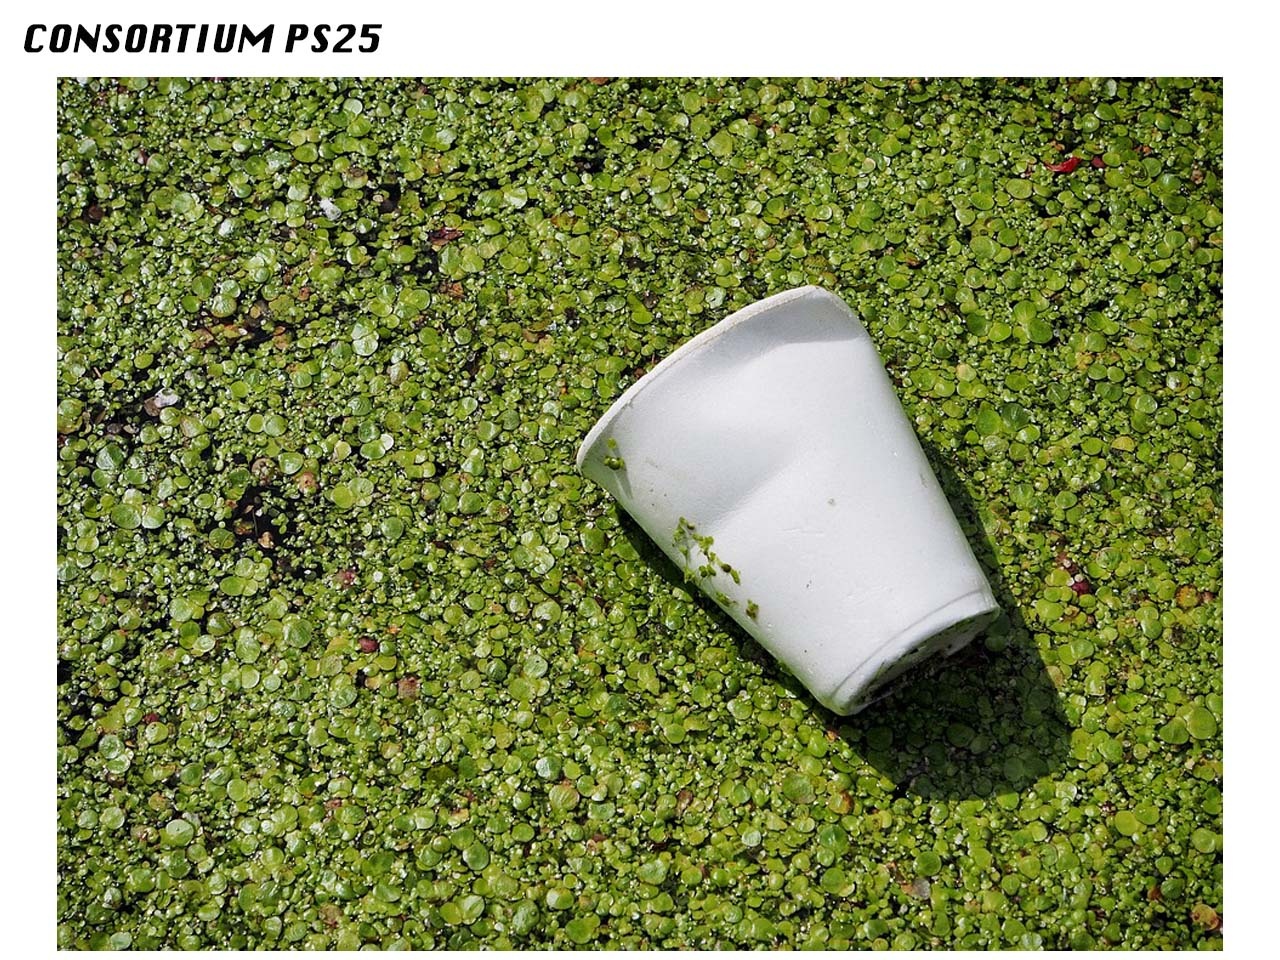 Consortium PS25 : Feu vert à la concrétisation de la filière française de recyclage des emballages ménagers en polystyrène (PS)